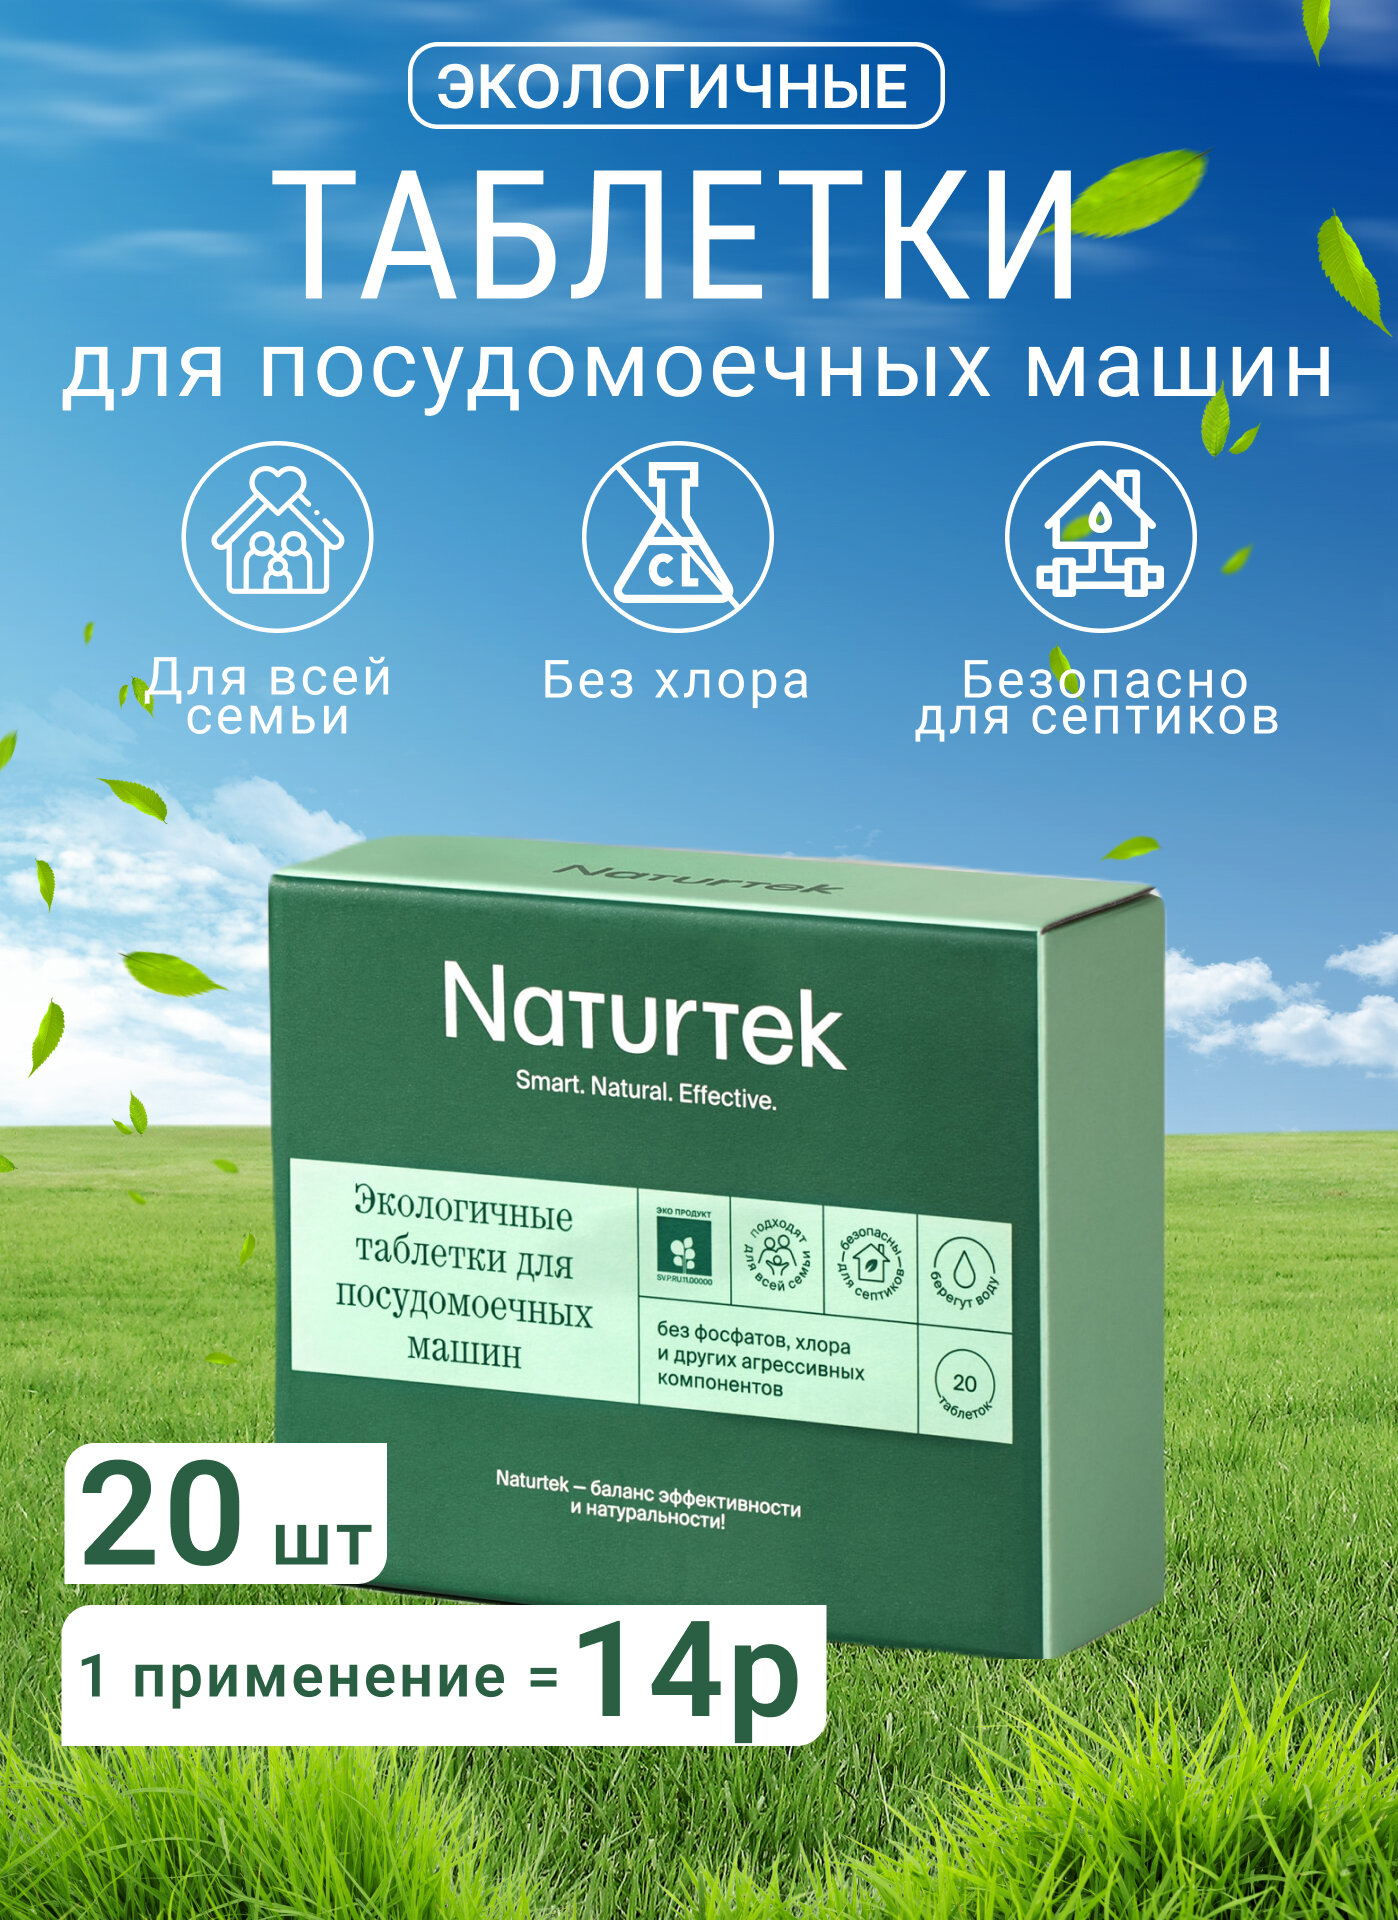 Экологичные таблетки для посудомоечных машин Naturtek(20г),